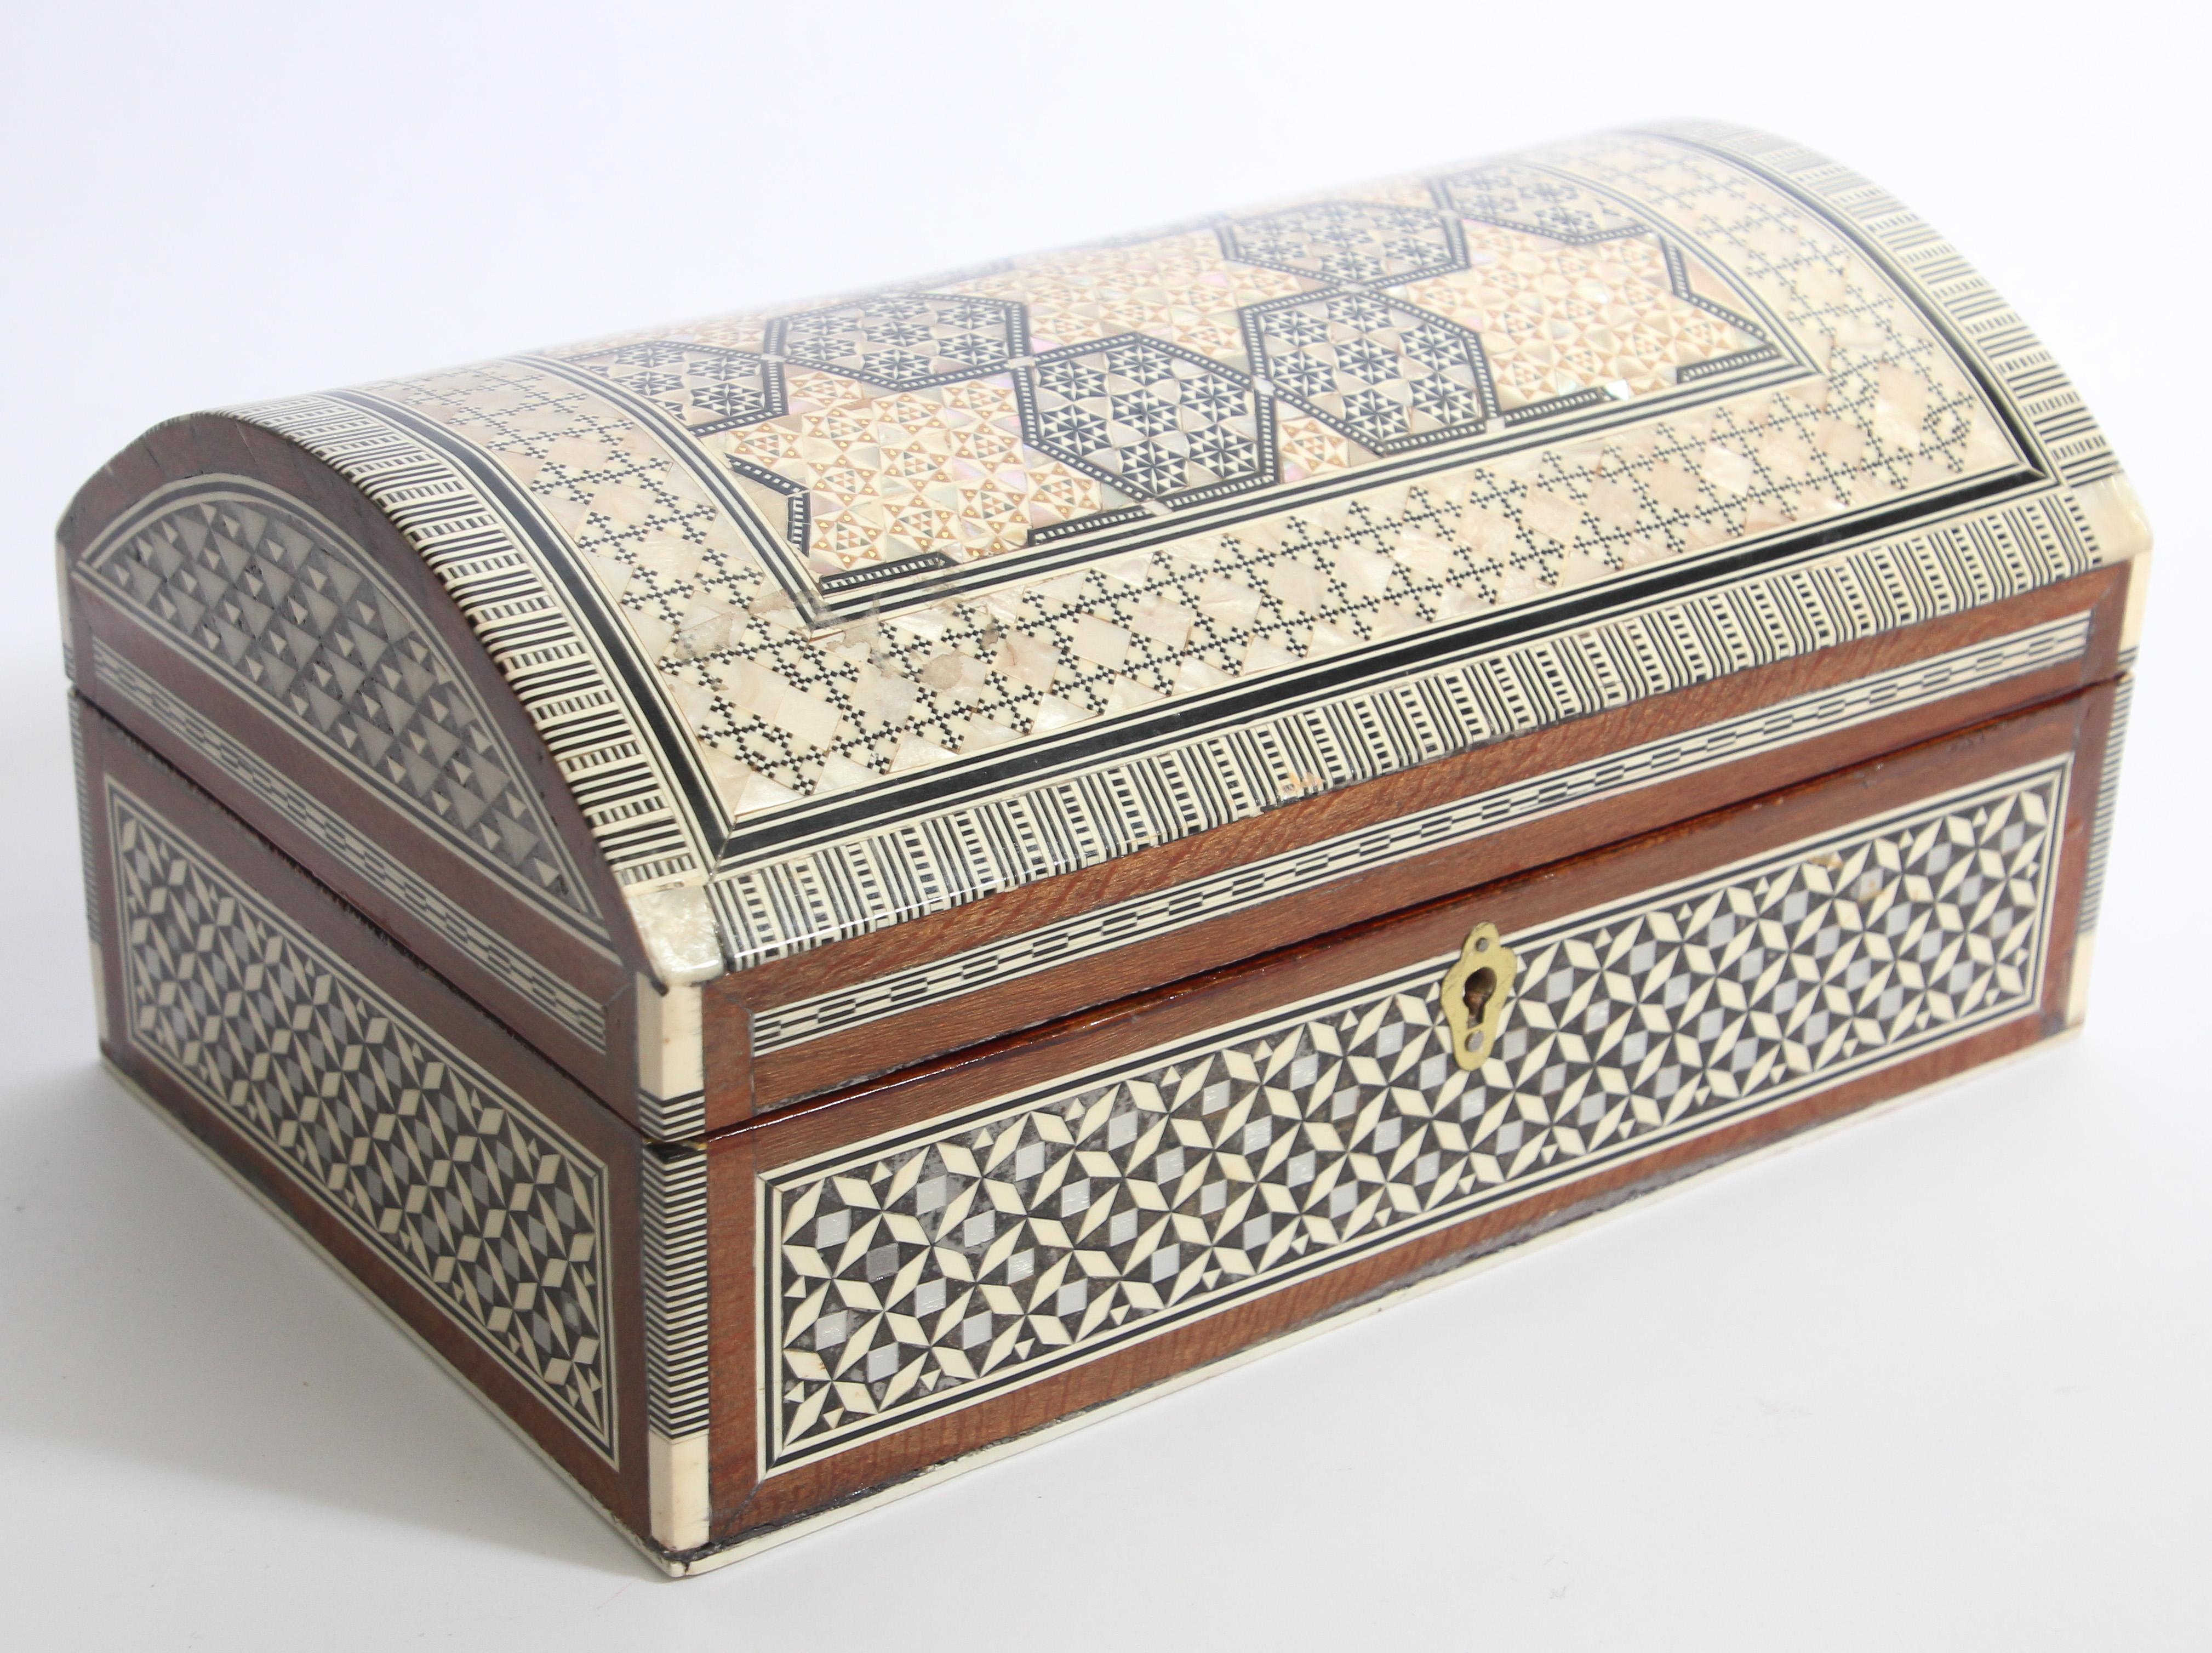 Große exquisite handgefertigte nahöstliche ägyptische Mosaik Einlegearbeit Sadeli Holz Schmuckkästchen.
Die Kuppeltruhe ist mit maurischen Motiven verziert, die sorgfältig in verschiedene Fruchthölzer eingelegt wurden.
Dekoratives Kästchen aus